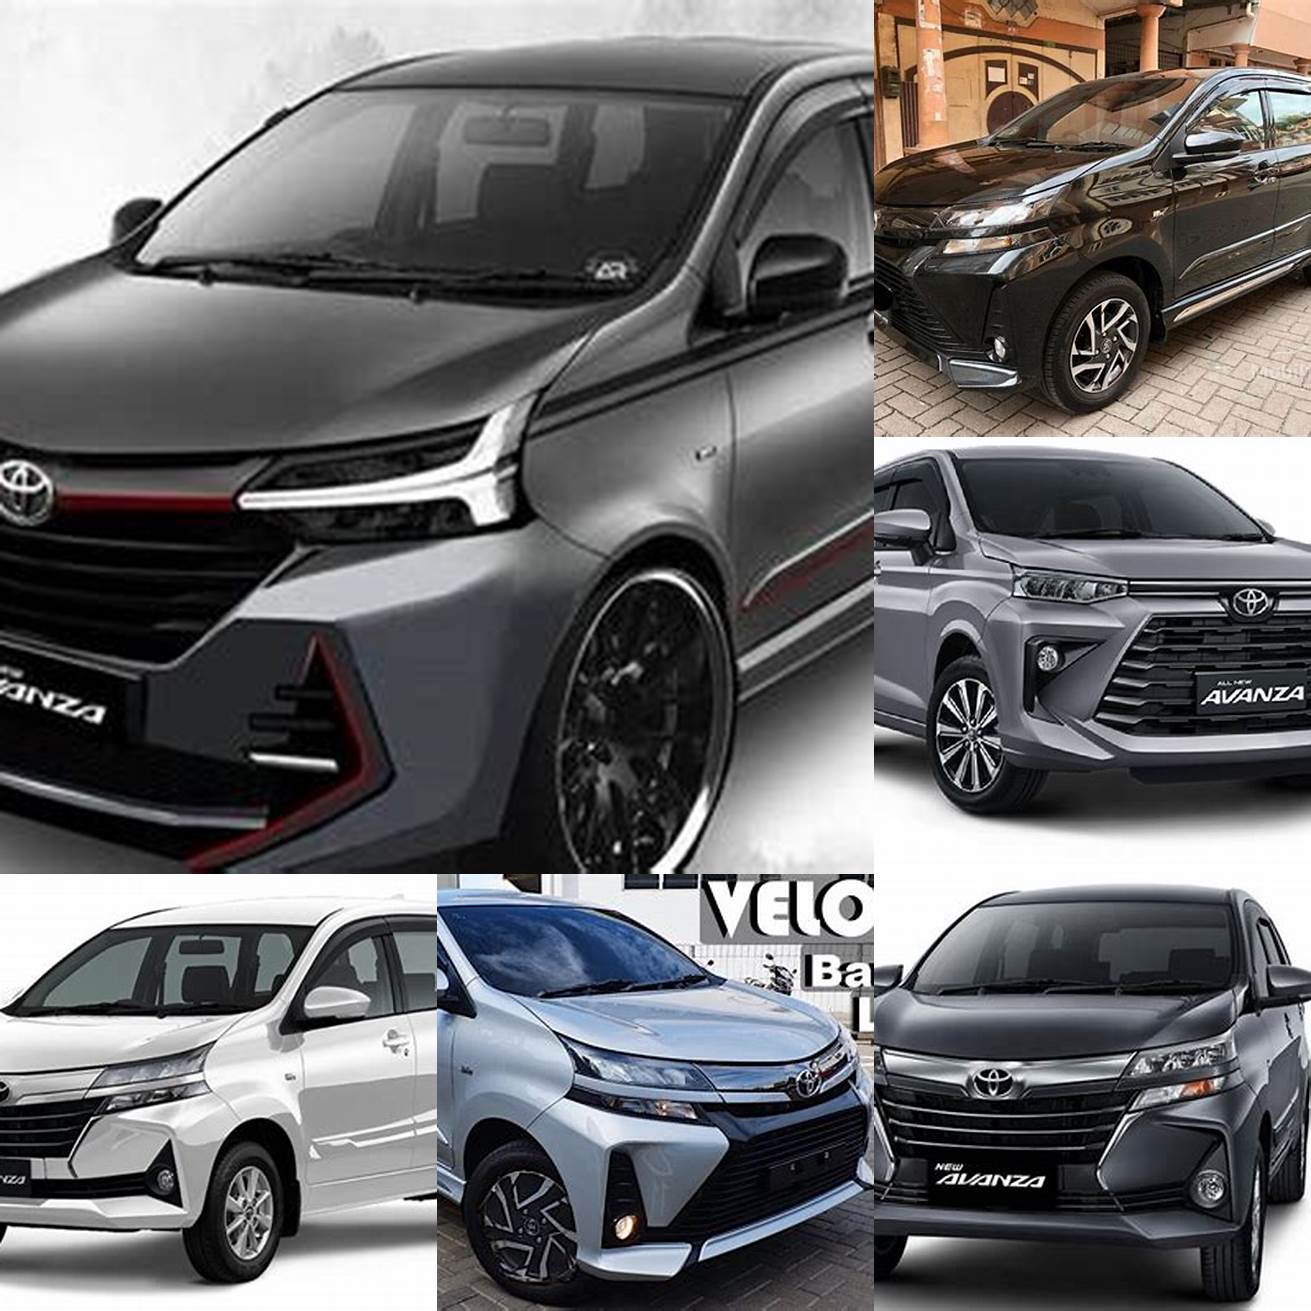 Harga mobil Toyota Avanza baru tahun 2020 Rp 200 juta - Rp 240 juta